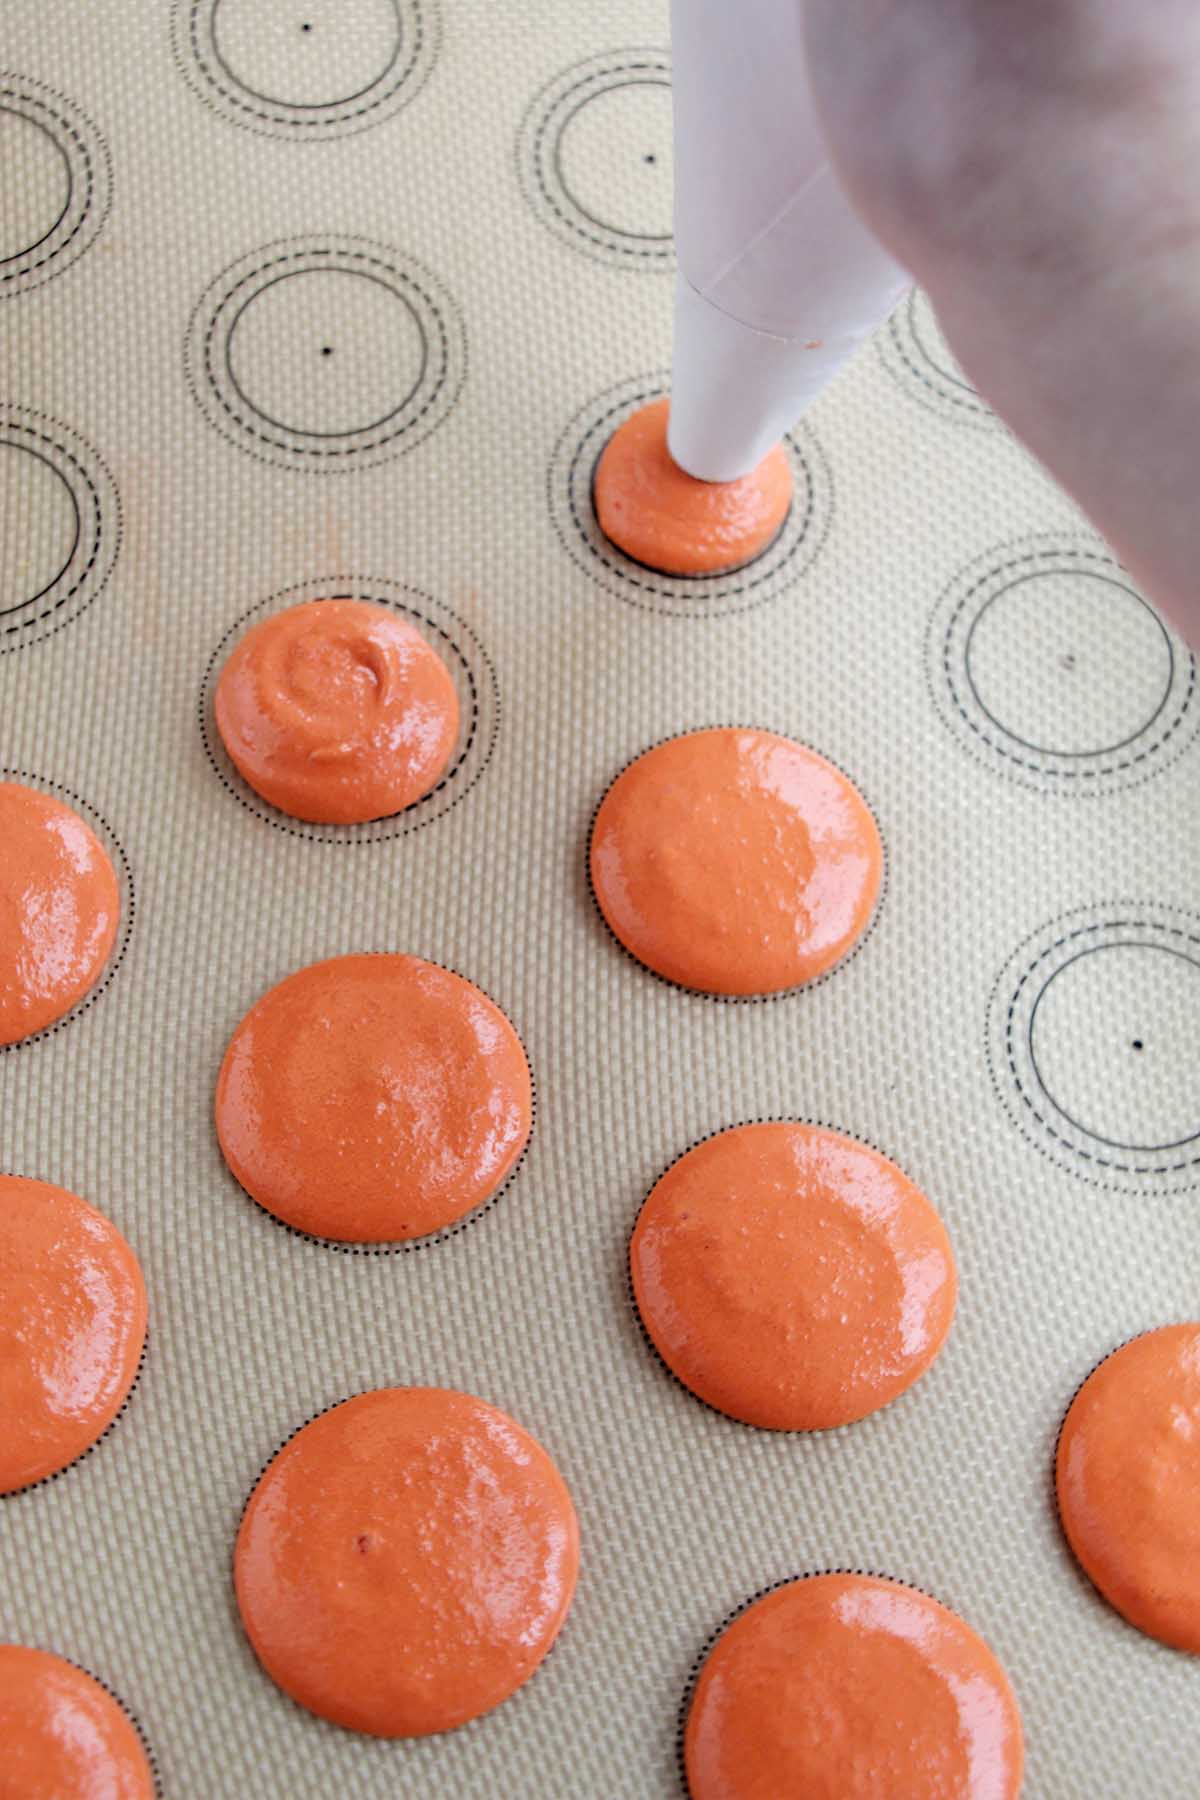 piping orange macaron batter onto a silicone baking mat.